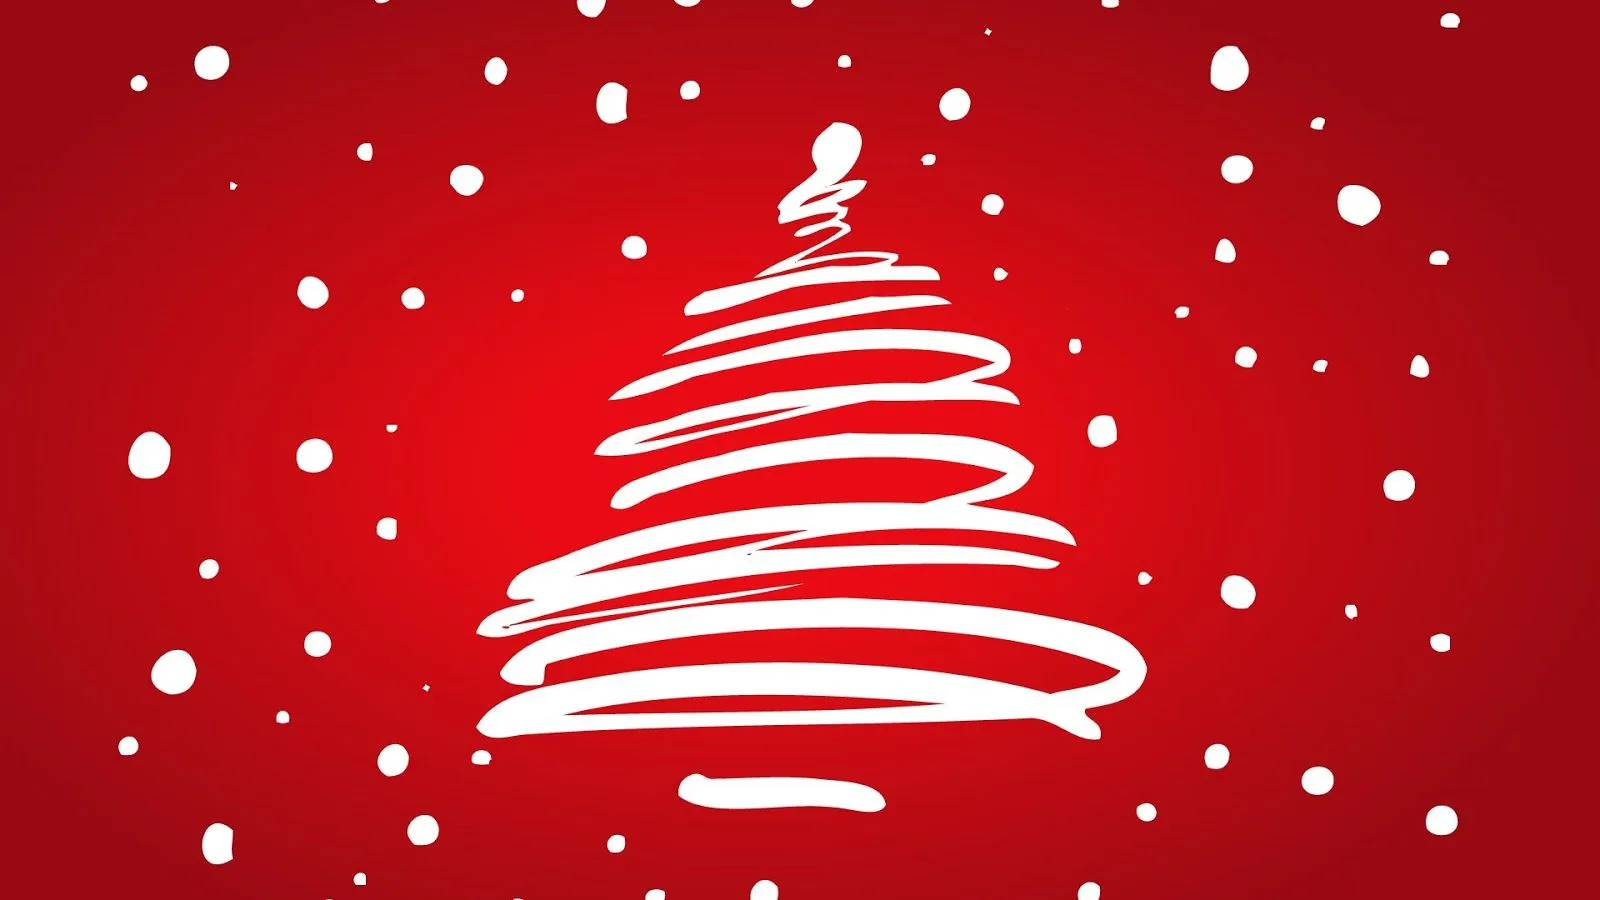 Wallpapers de Navidad - Feliz Navidad - Fondo rojo con árbol ...